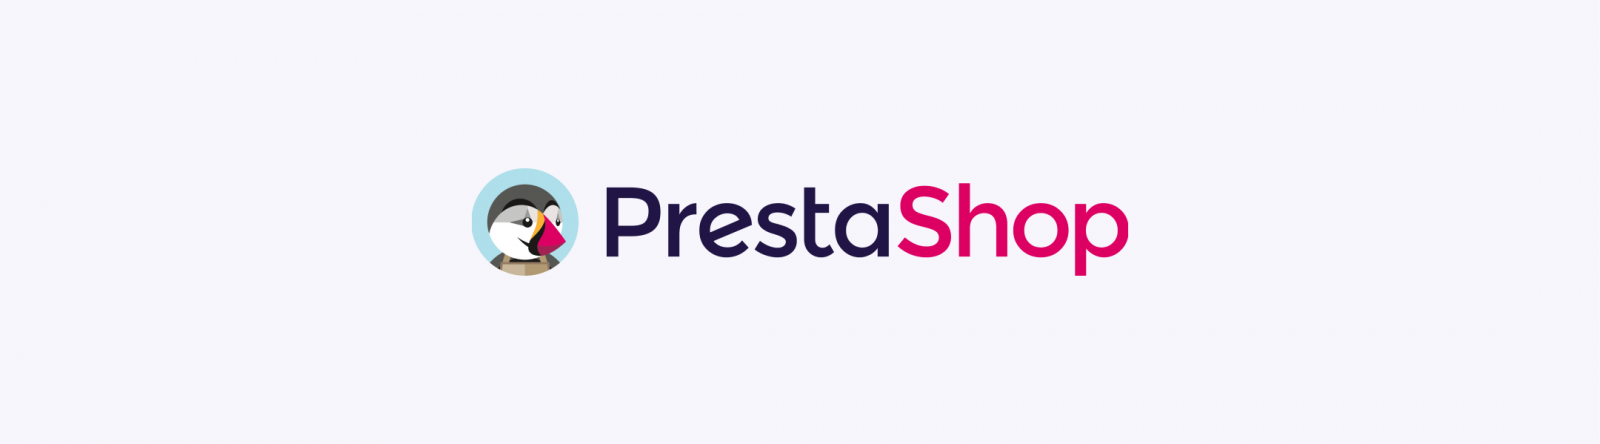 PrestaShop online store development